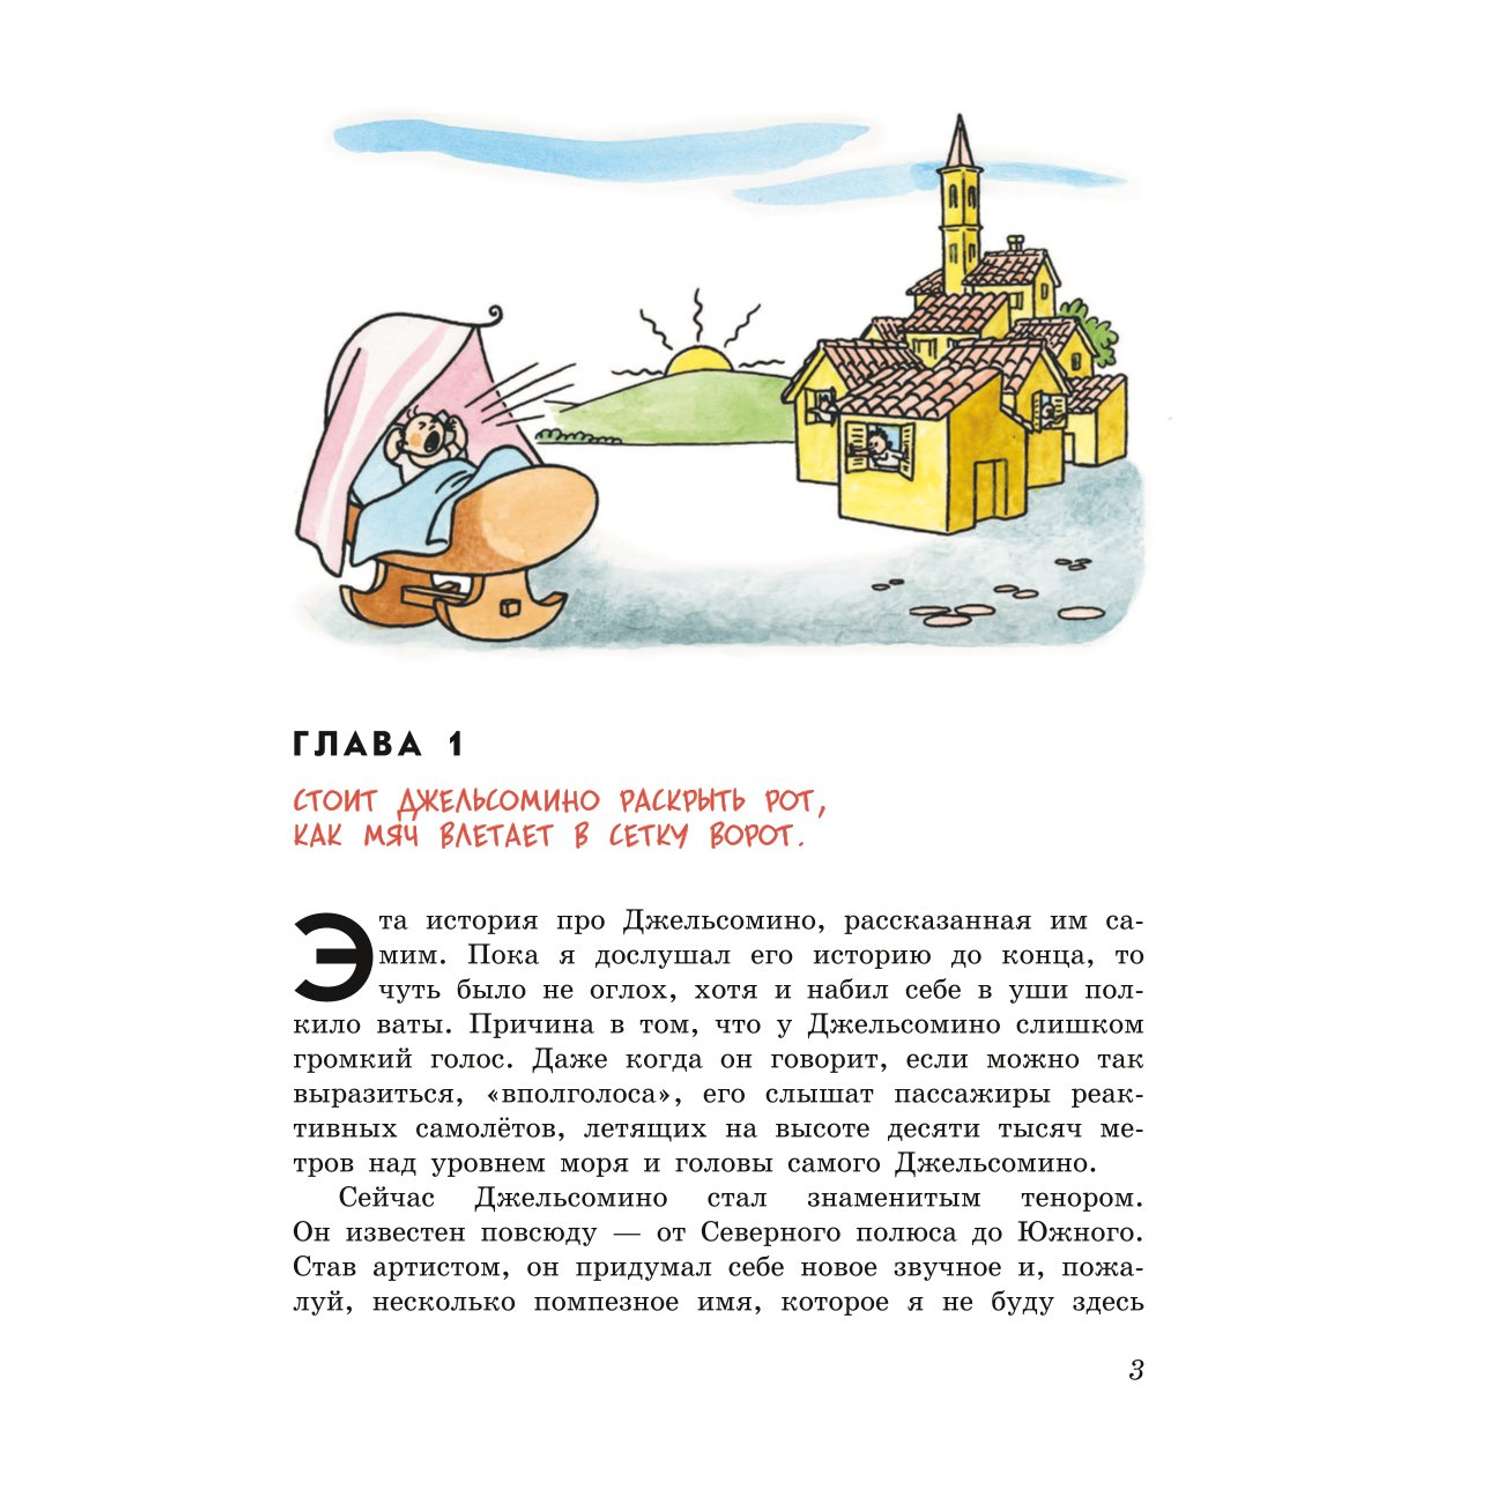 Книга Эксмо Джельсомино в Стране лжецов иллюстрации Вердини перевод Махова - фото 2